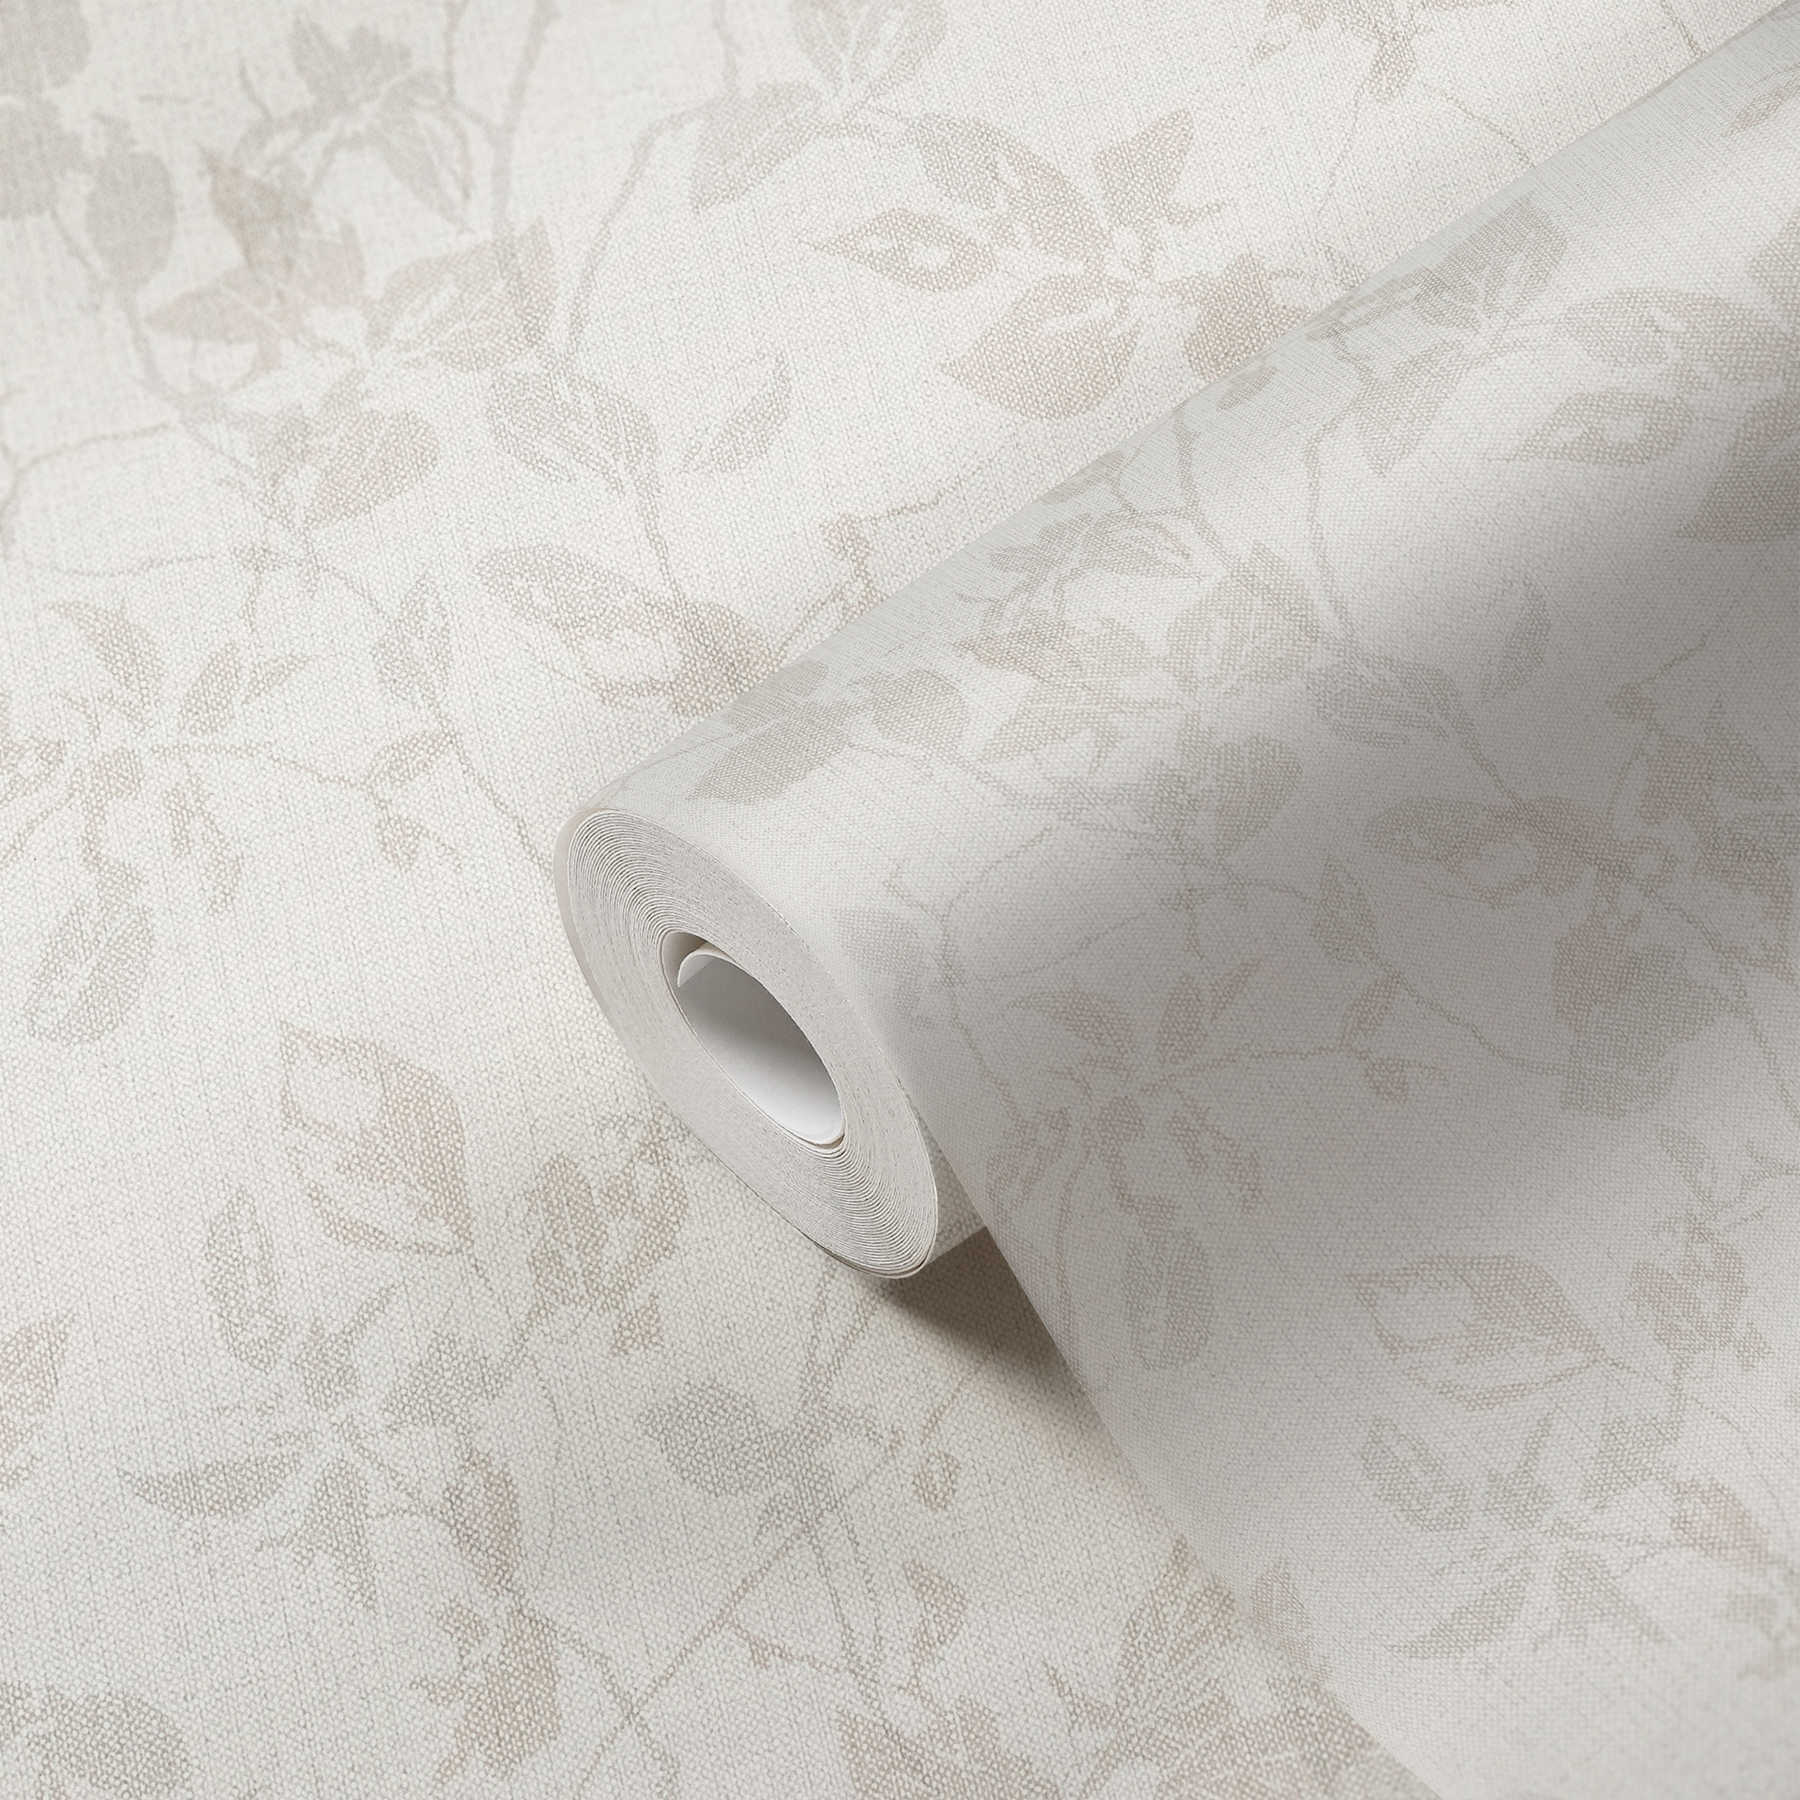             Wallpaper with leaf motif & linen look - beige, grey
        